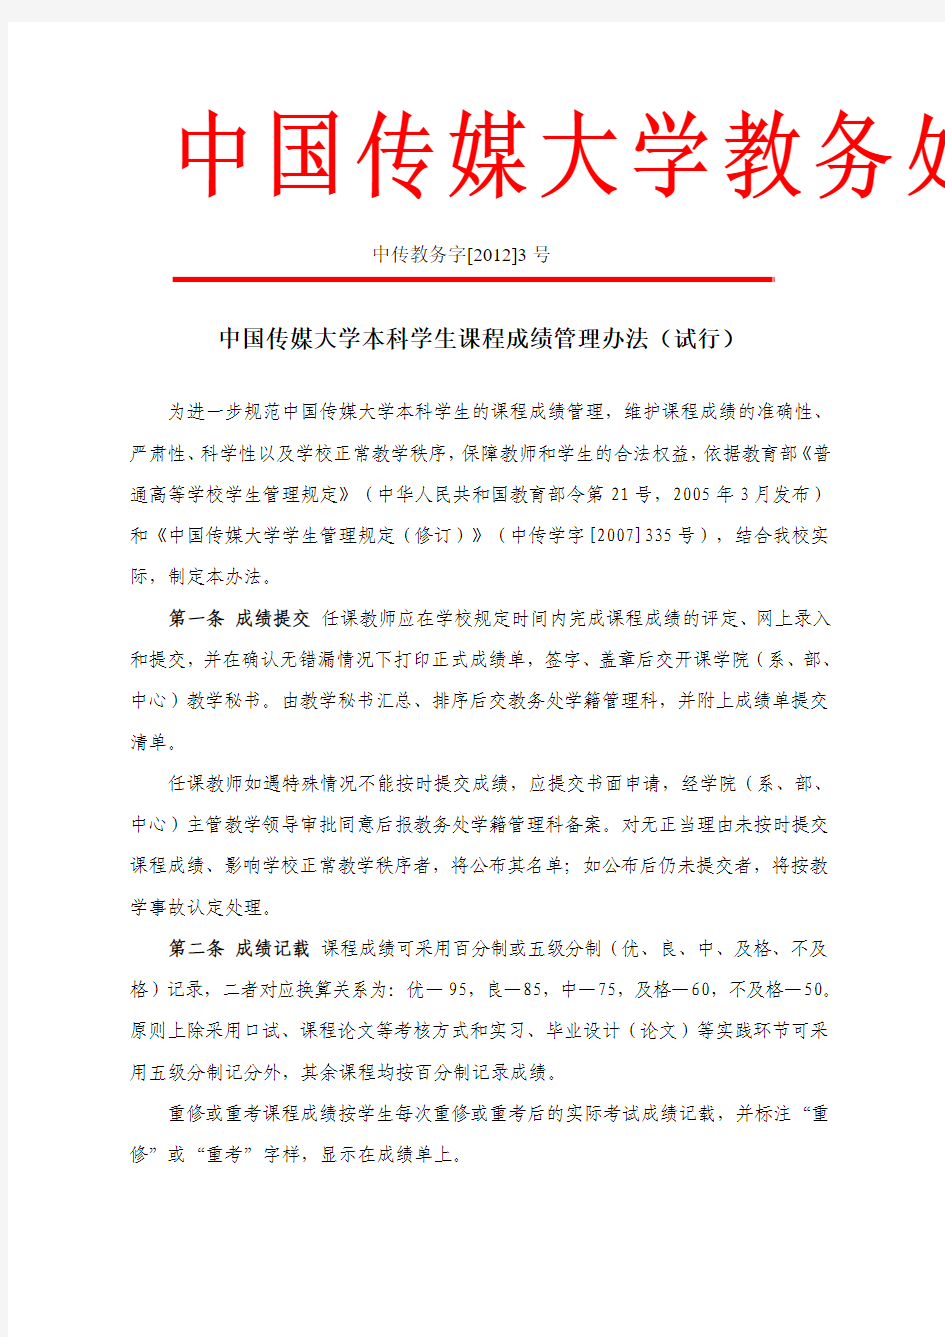 中传教字[2012]3号-中国传媒大学本科学生课程成绩管理办法(试行)